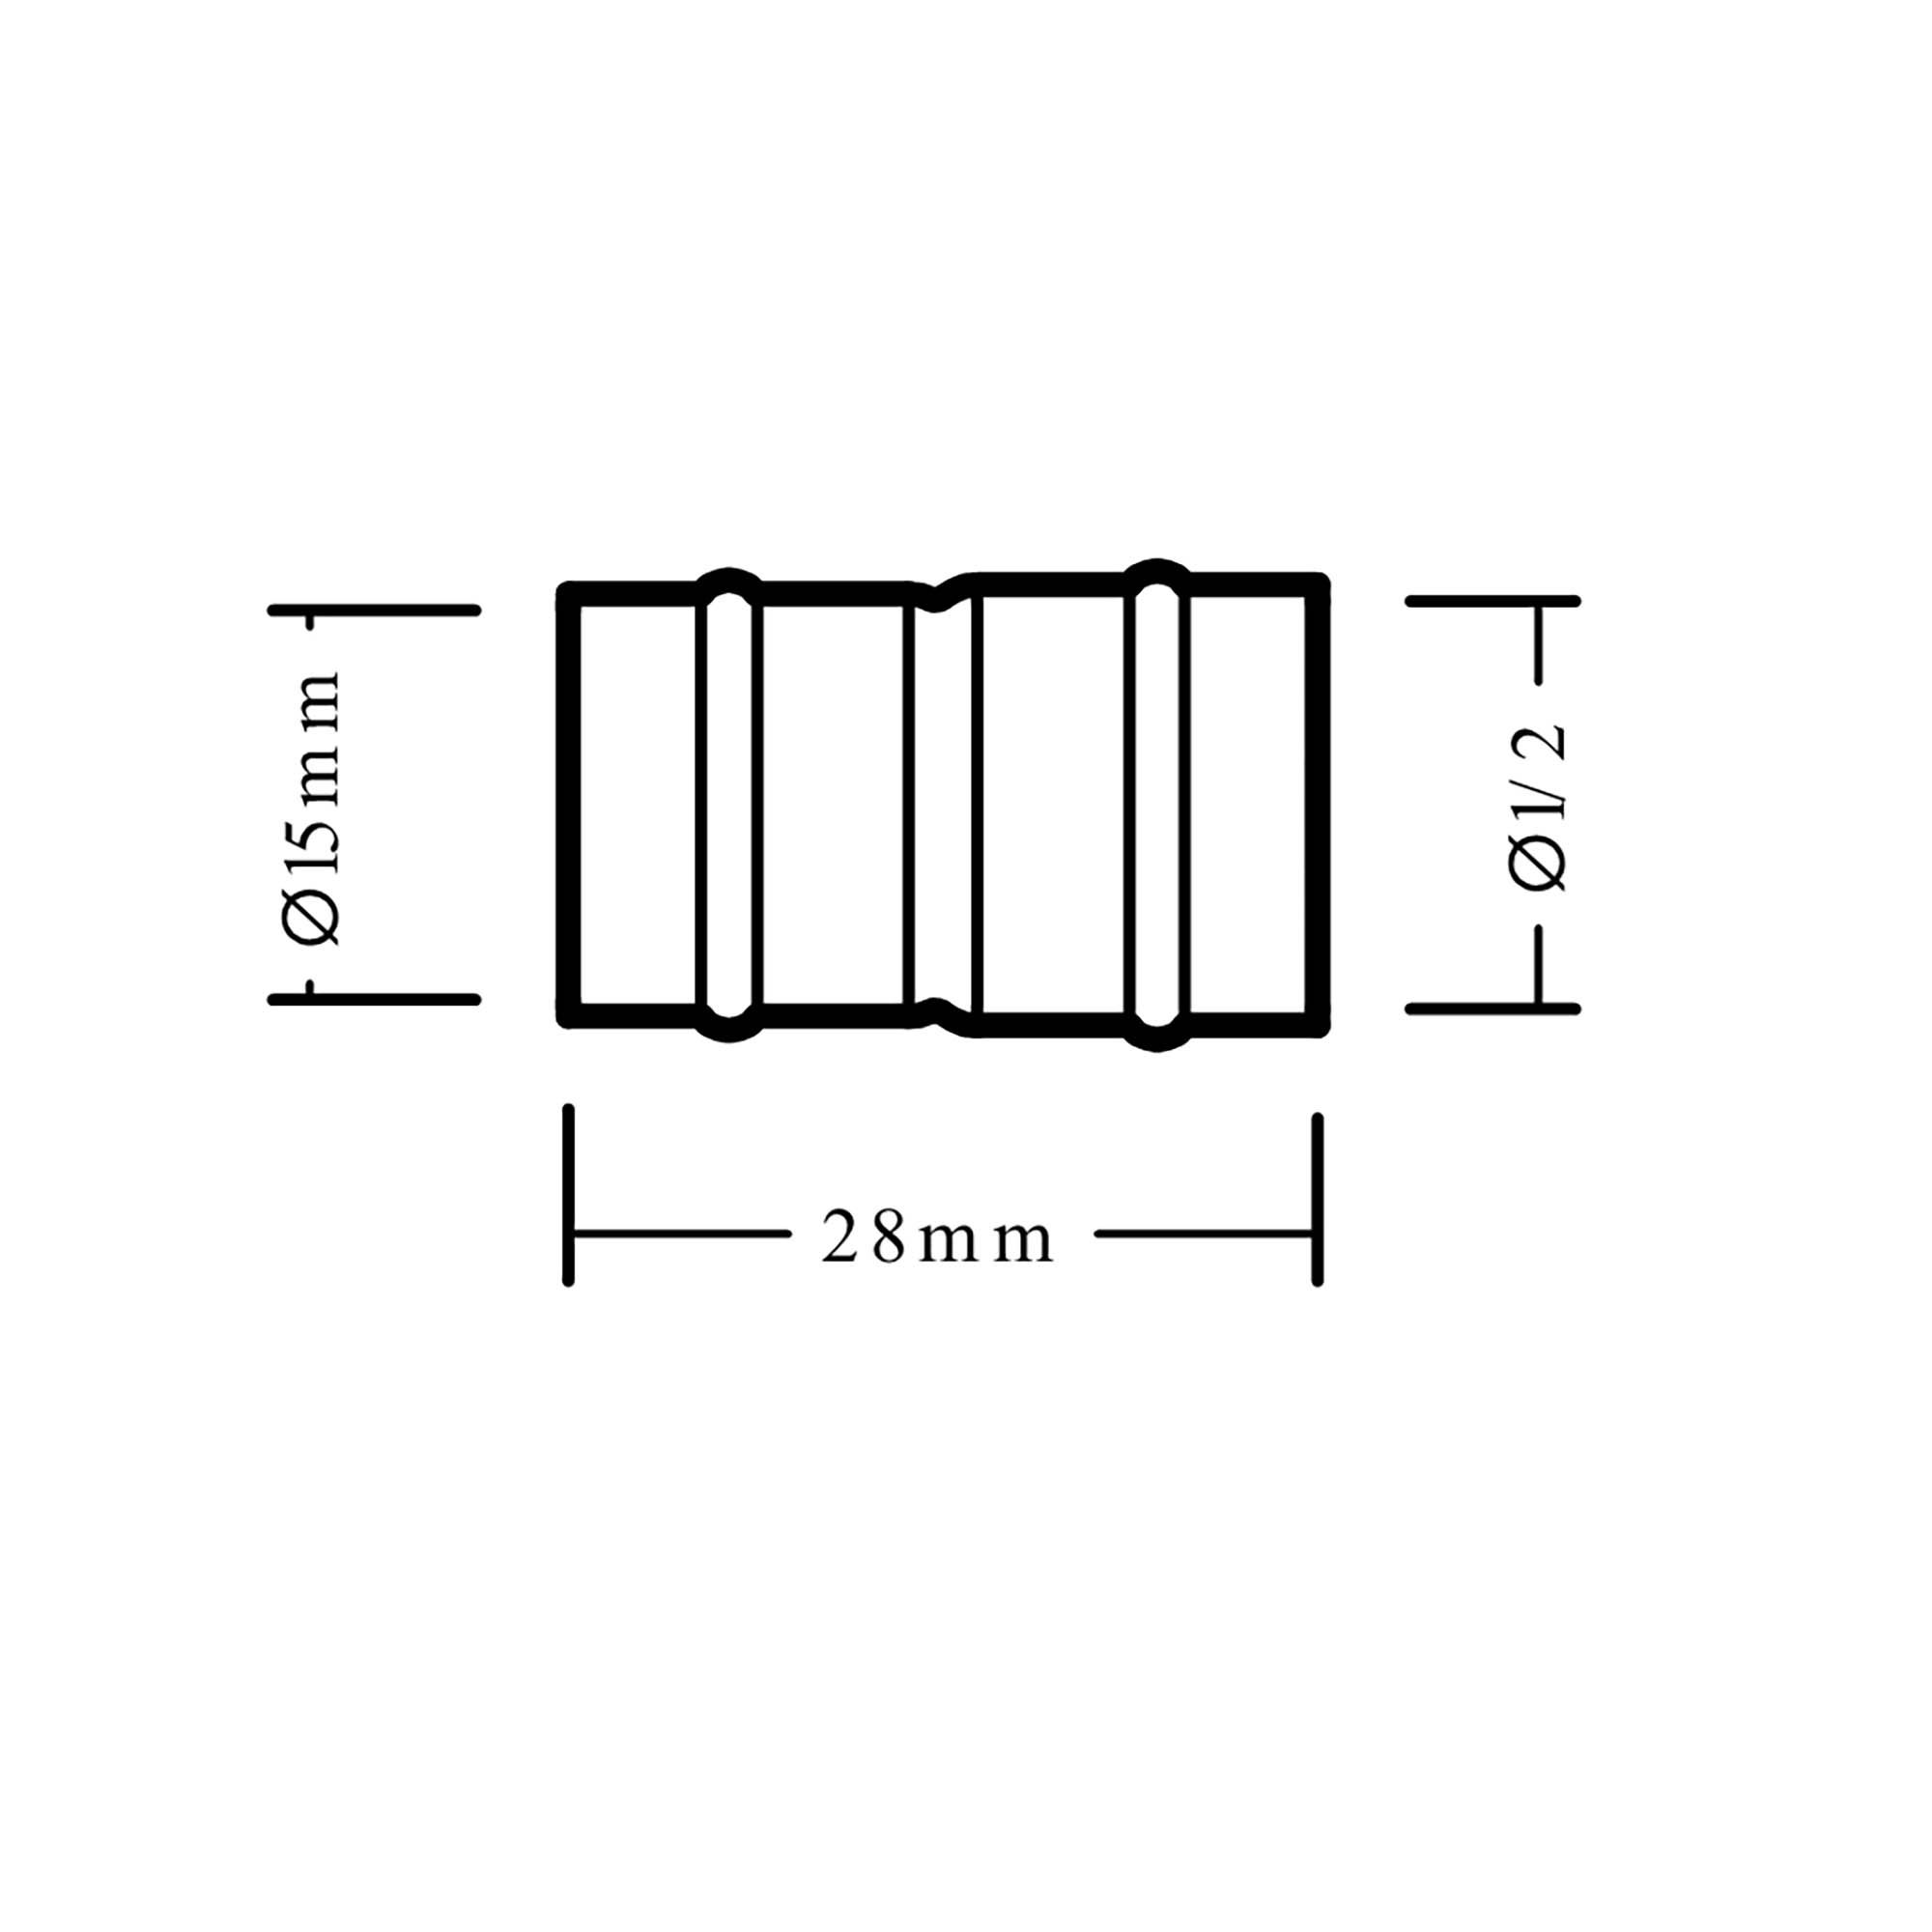 Plumbsure Solder ring Adaptor (Dia)15mm (Dia)12.7mm 15mm, Pack of 2